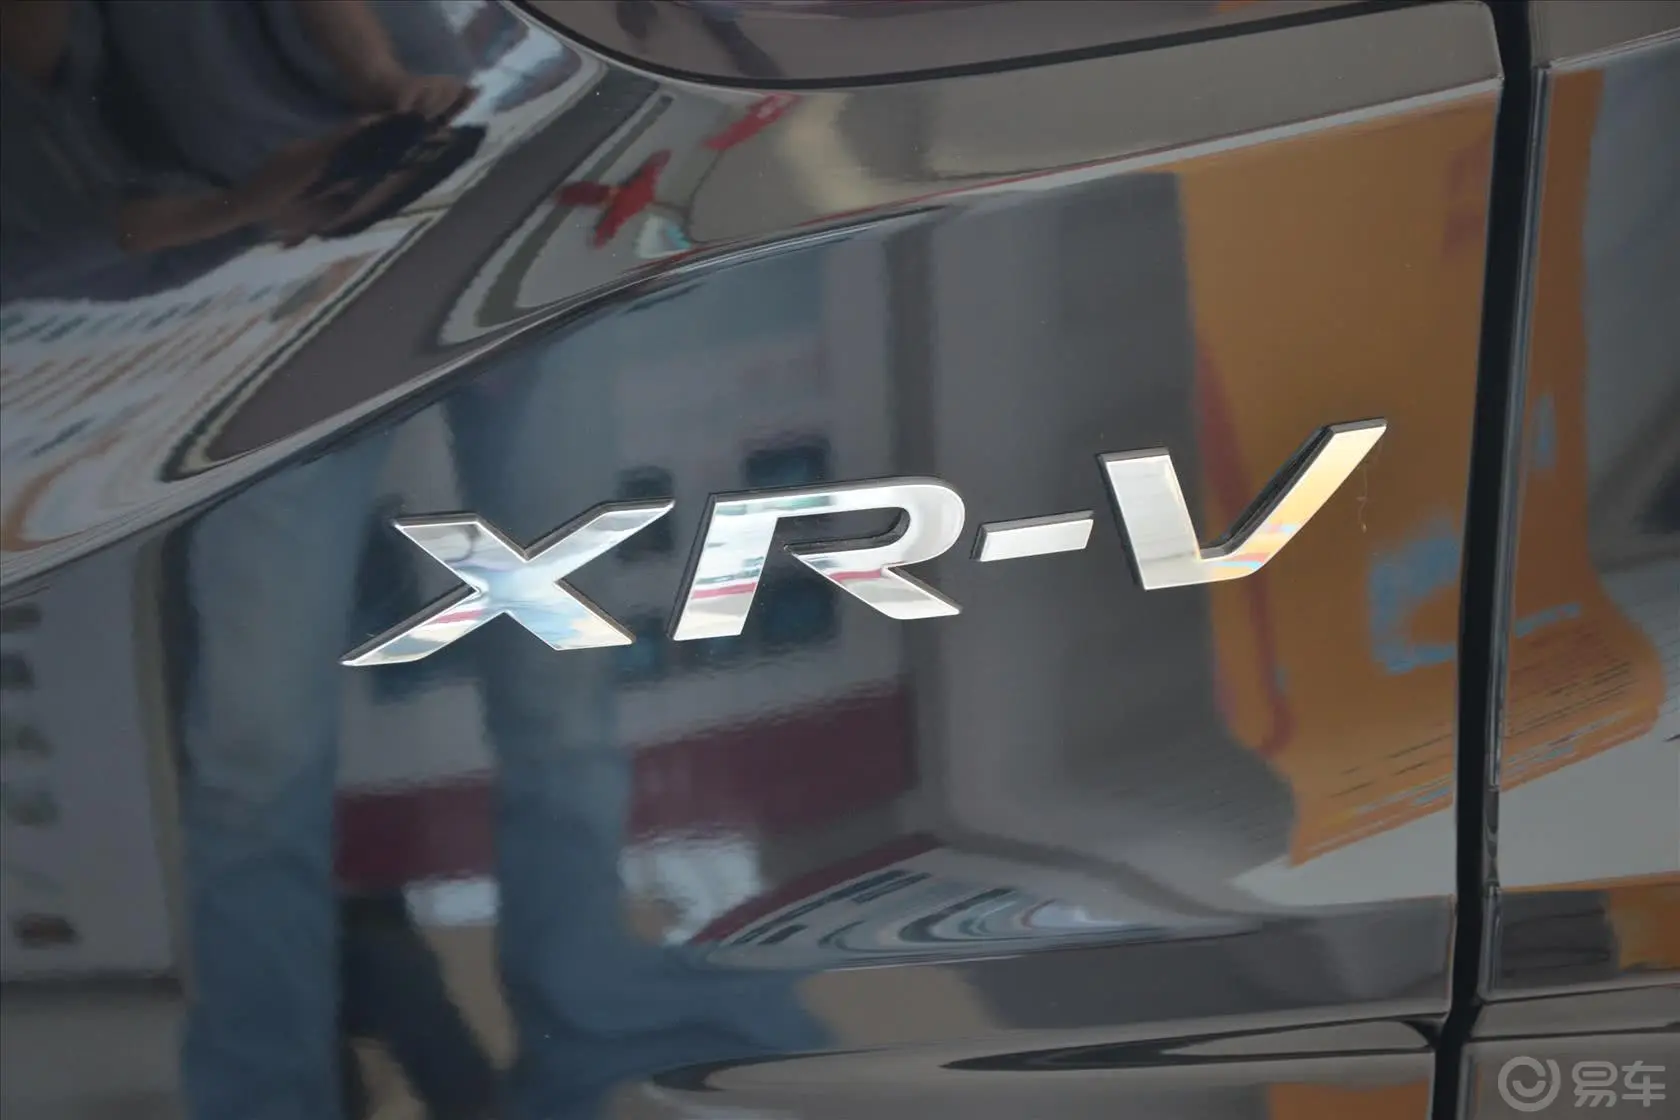 本田XR-V1.5L LXi CVT 经典版尾标